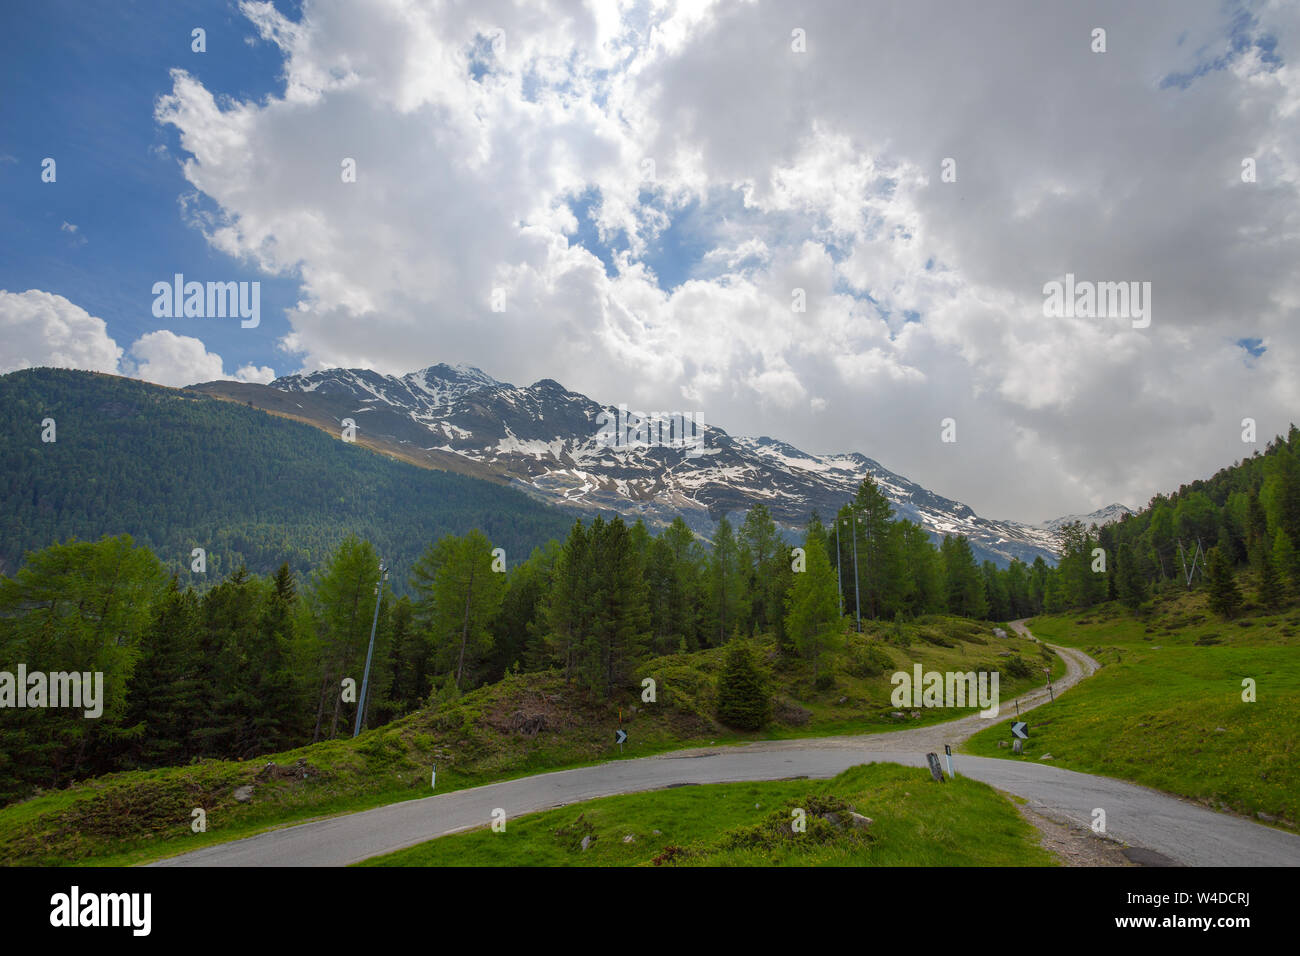 Vista dal Passo Gavia, un valico alpino del sud delle Alpi Retiche, segna il confine amministrativo tra le province di Sondrio e Brescia Foto Stock